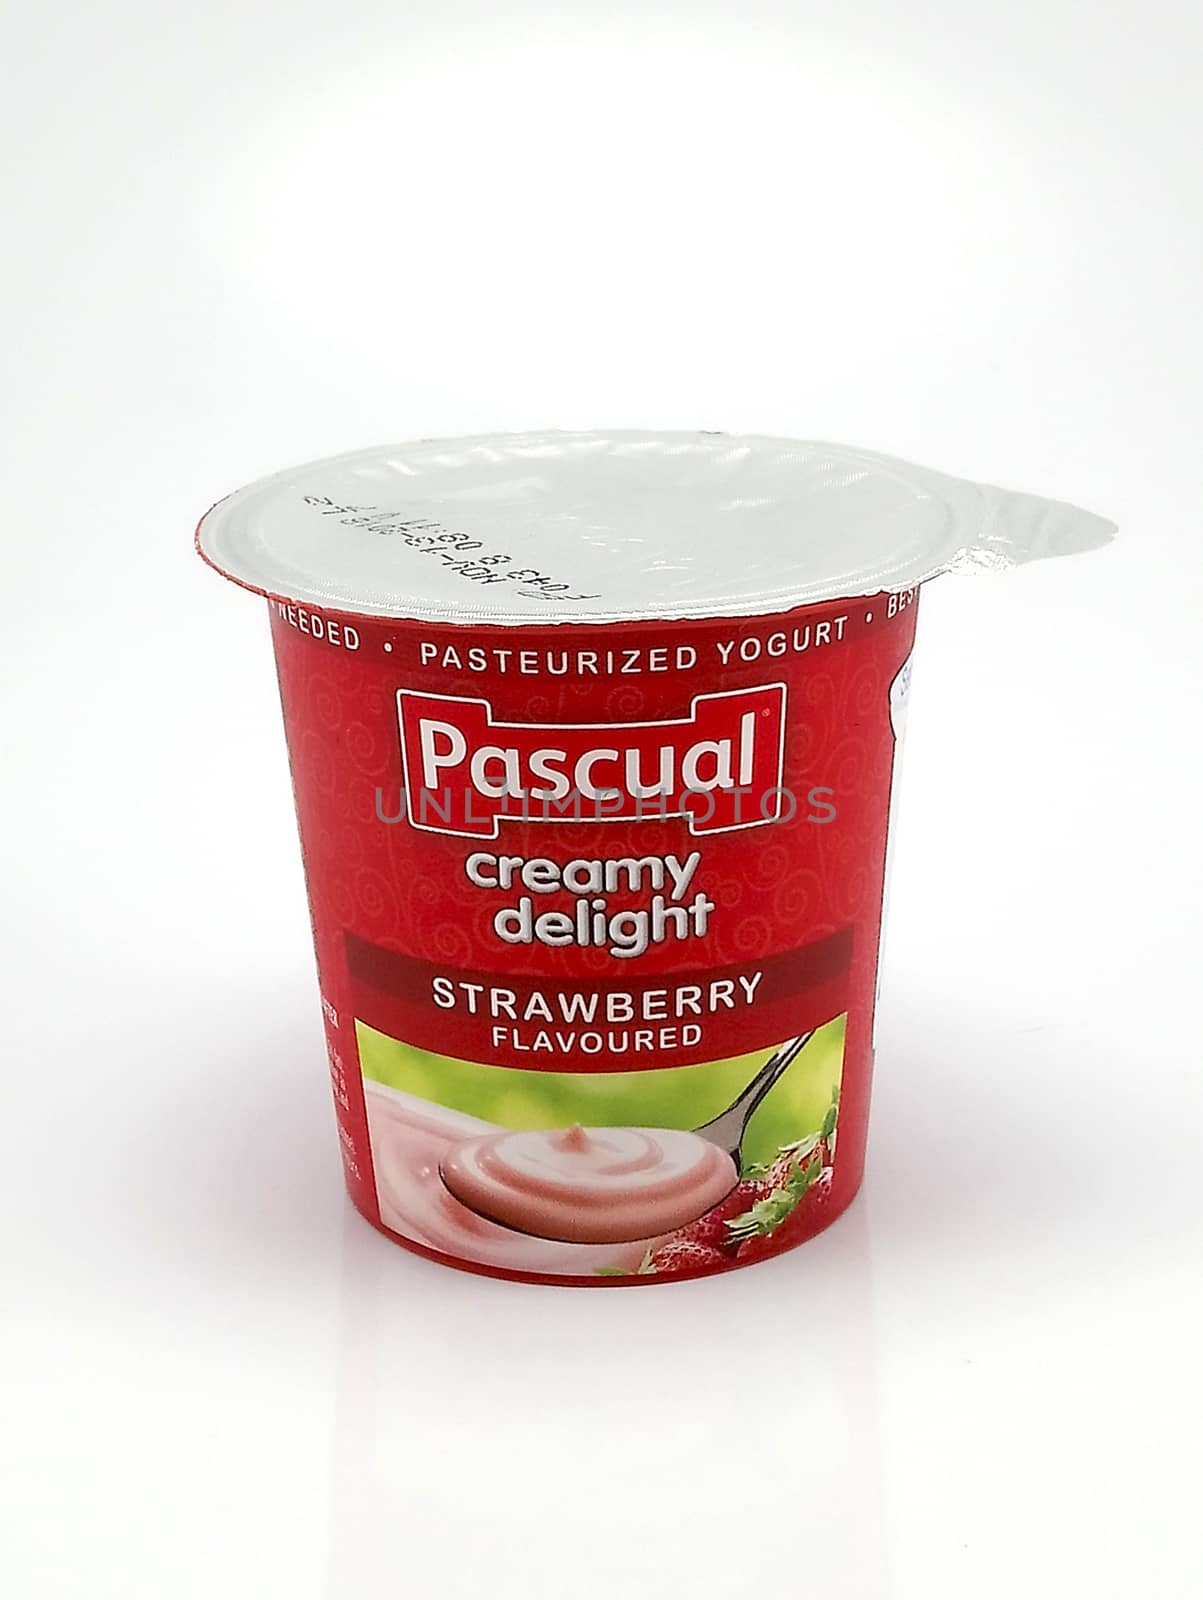 MANILA, PH - JUNE 23 - Pascual creamy delight strawberry flavor yogurt on June 23, 2020 in Manila, Philippines.